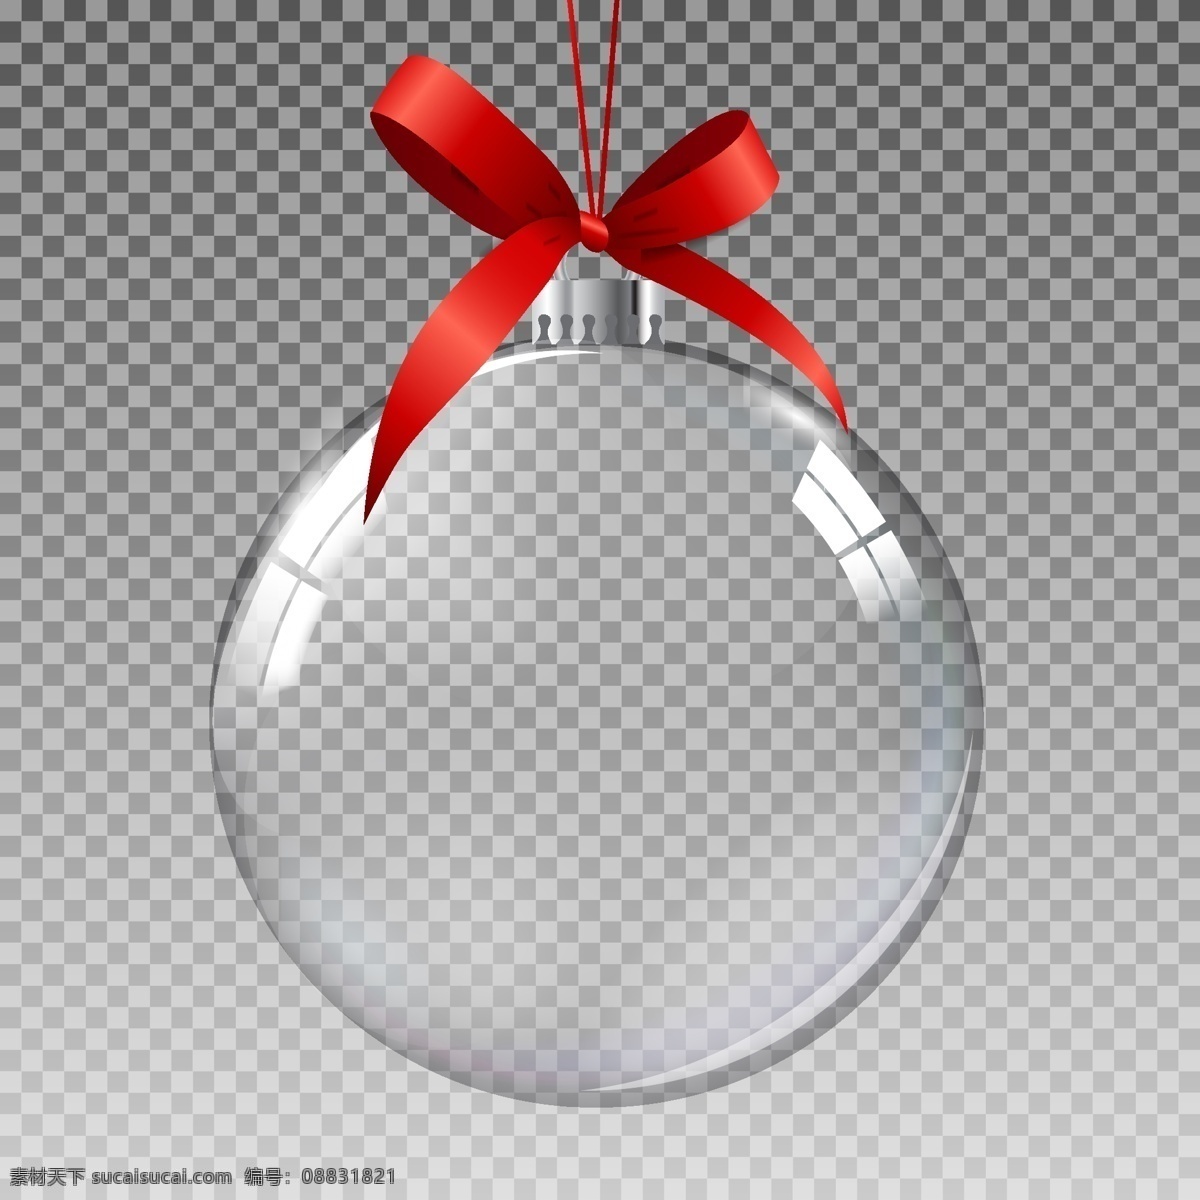 透明 圣诞球 元素 圣诞 psd素材 矢量 高清图片